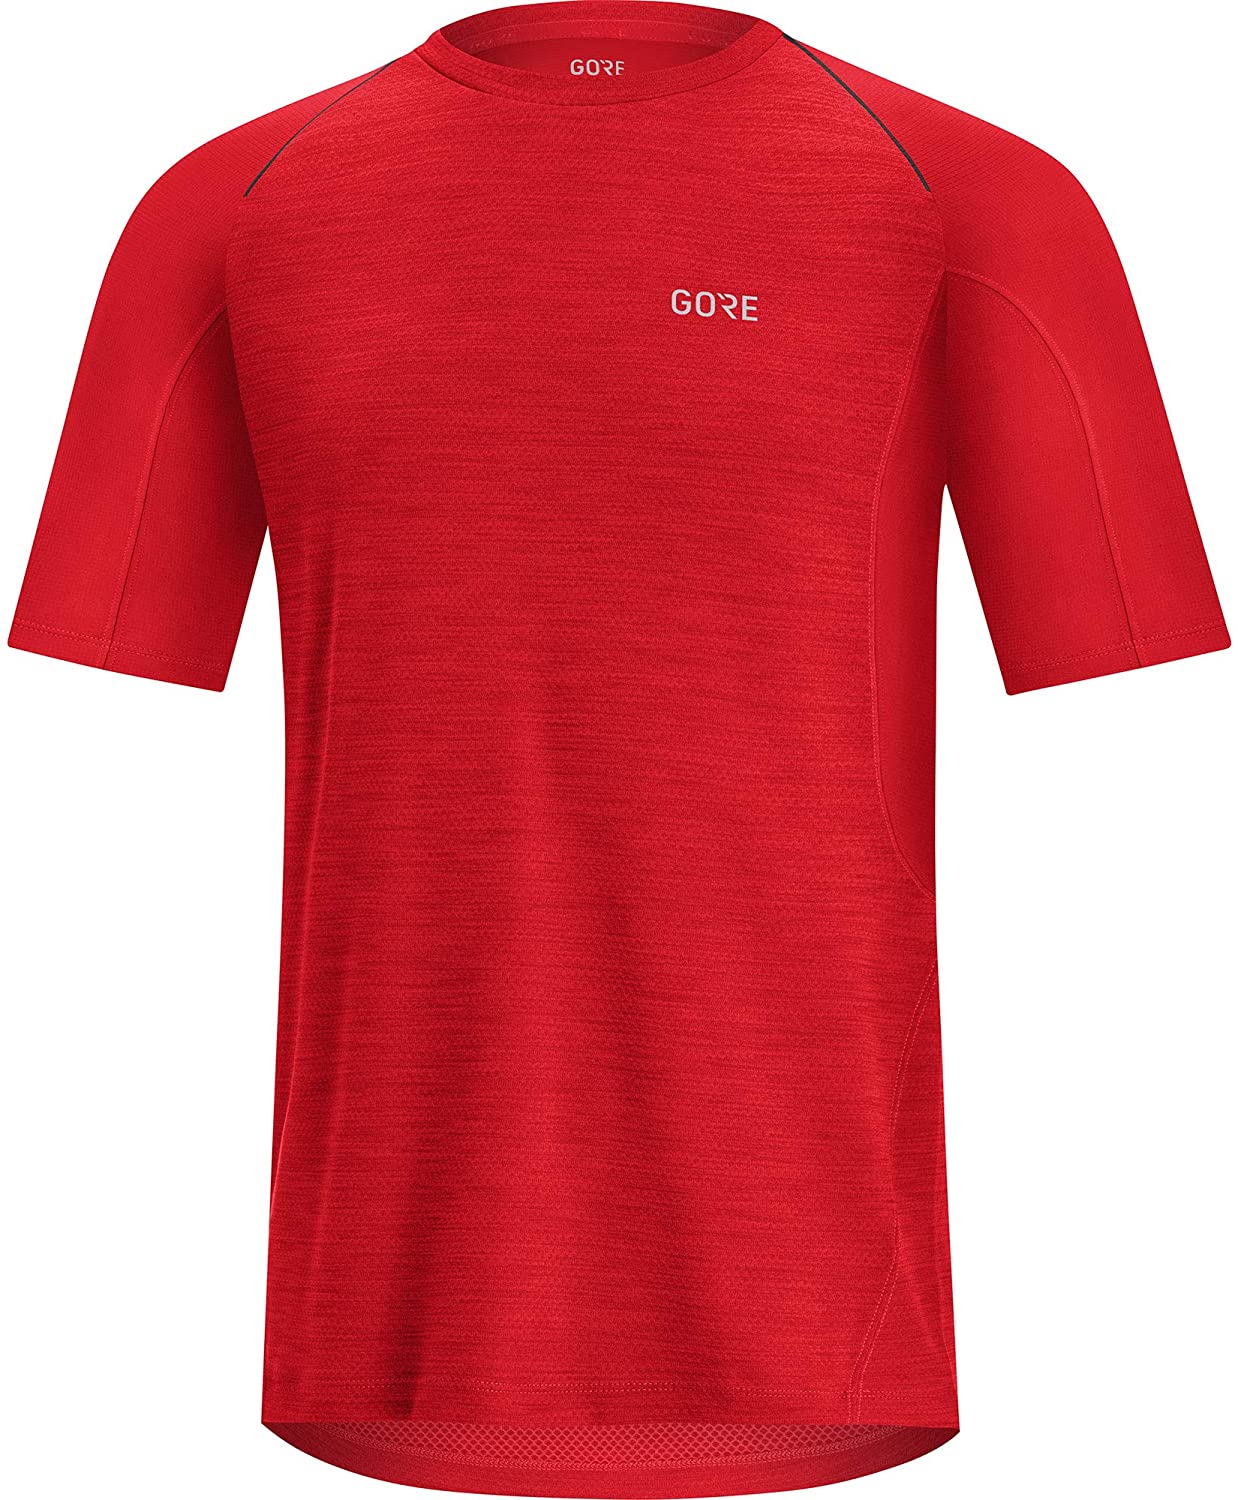 Gore Wear R5 Shirt - T-shirt - Men's